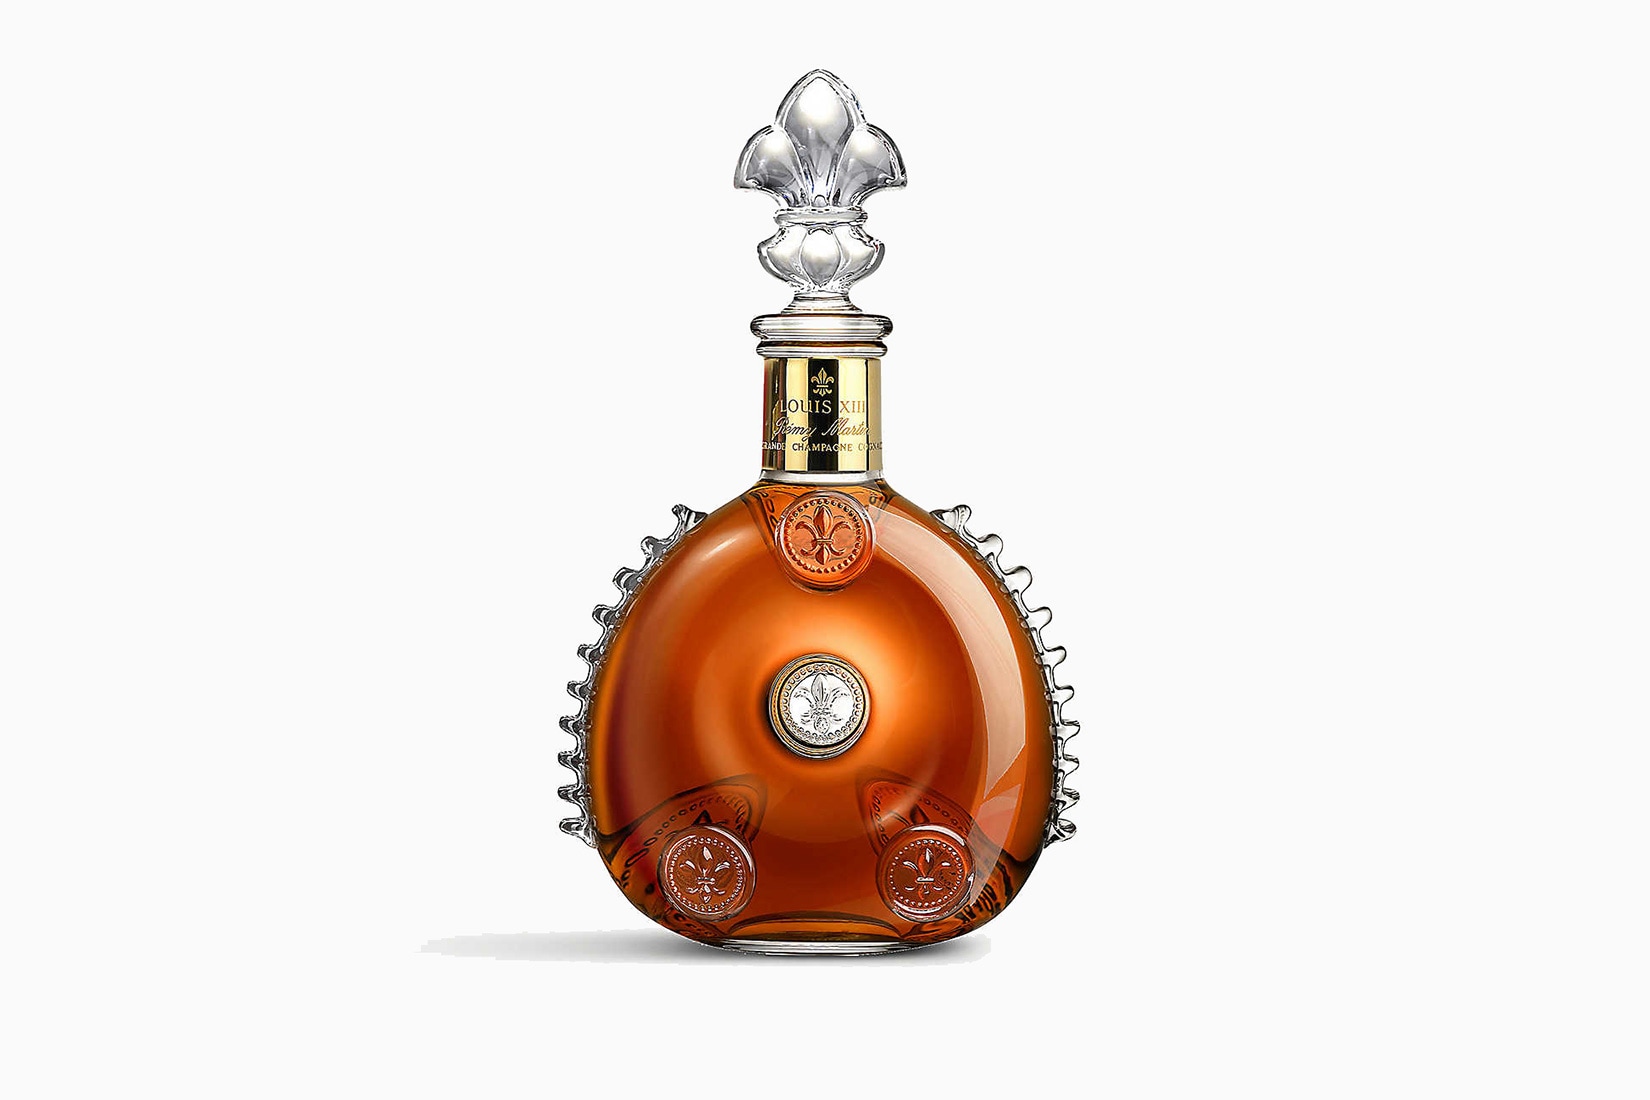 meilleures marques de cognac louis XIII - Luxe Digital